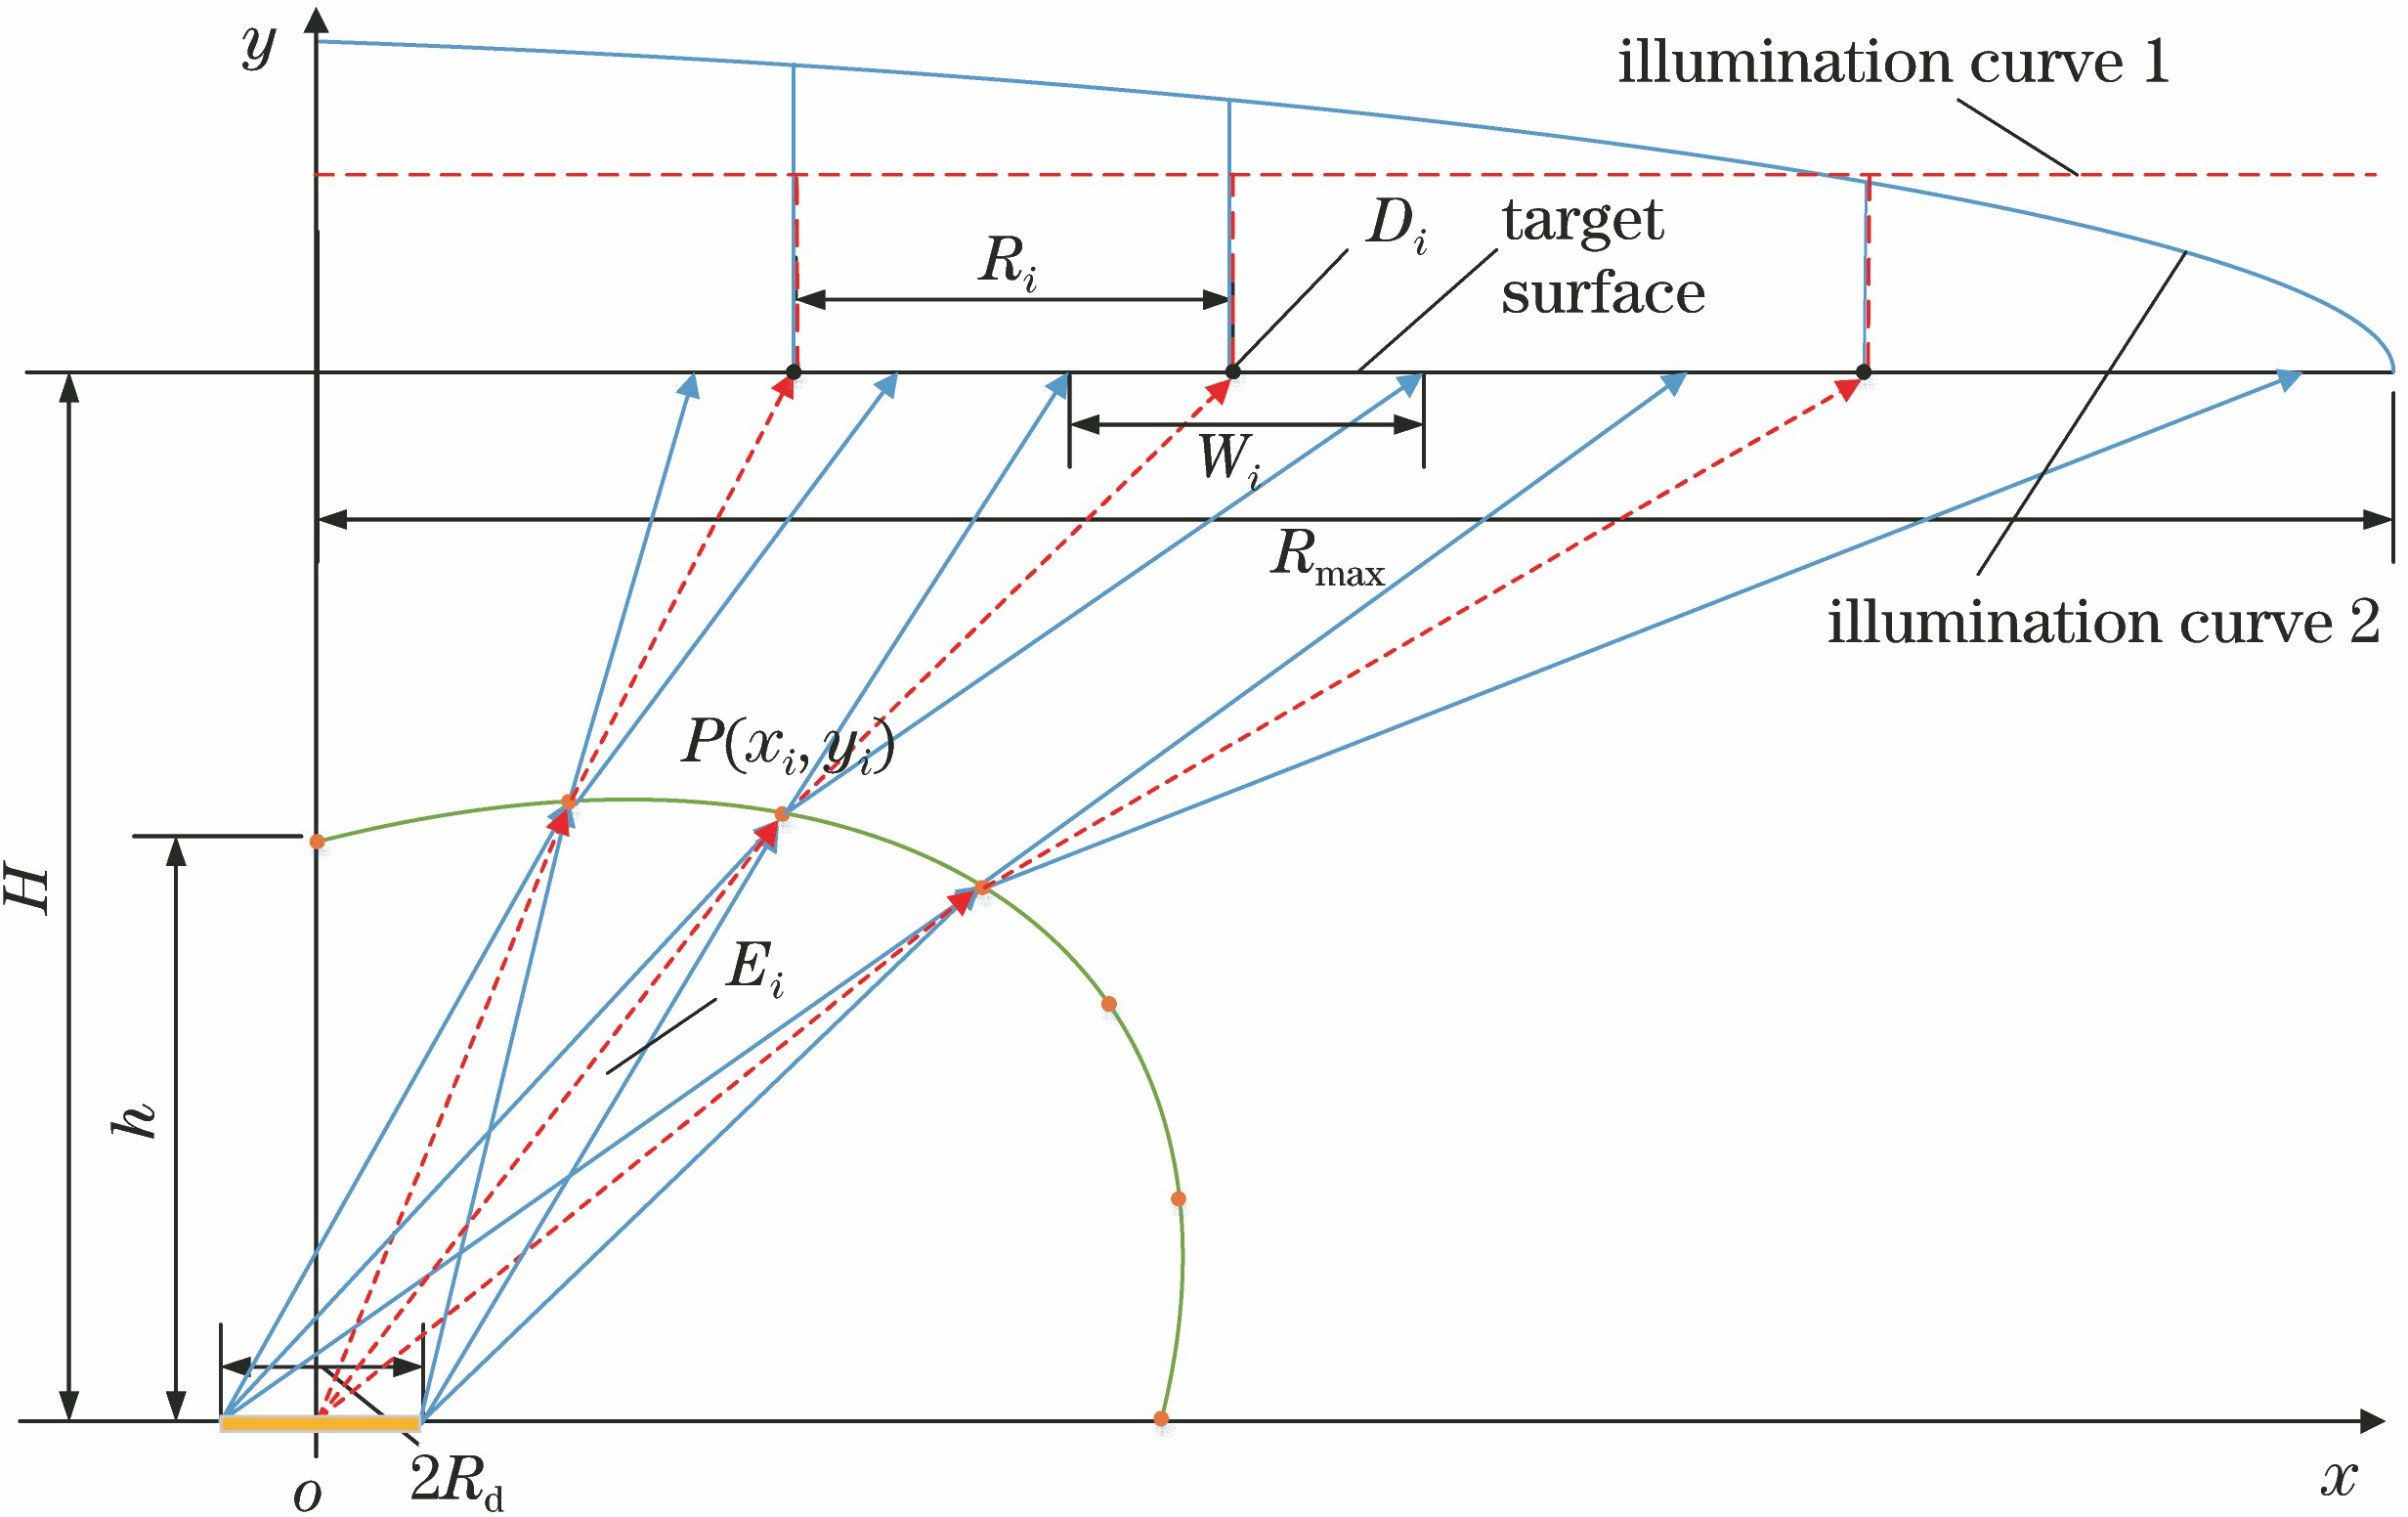 Analysis of illumination curve on target surface